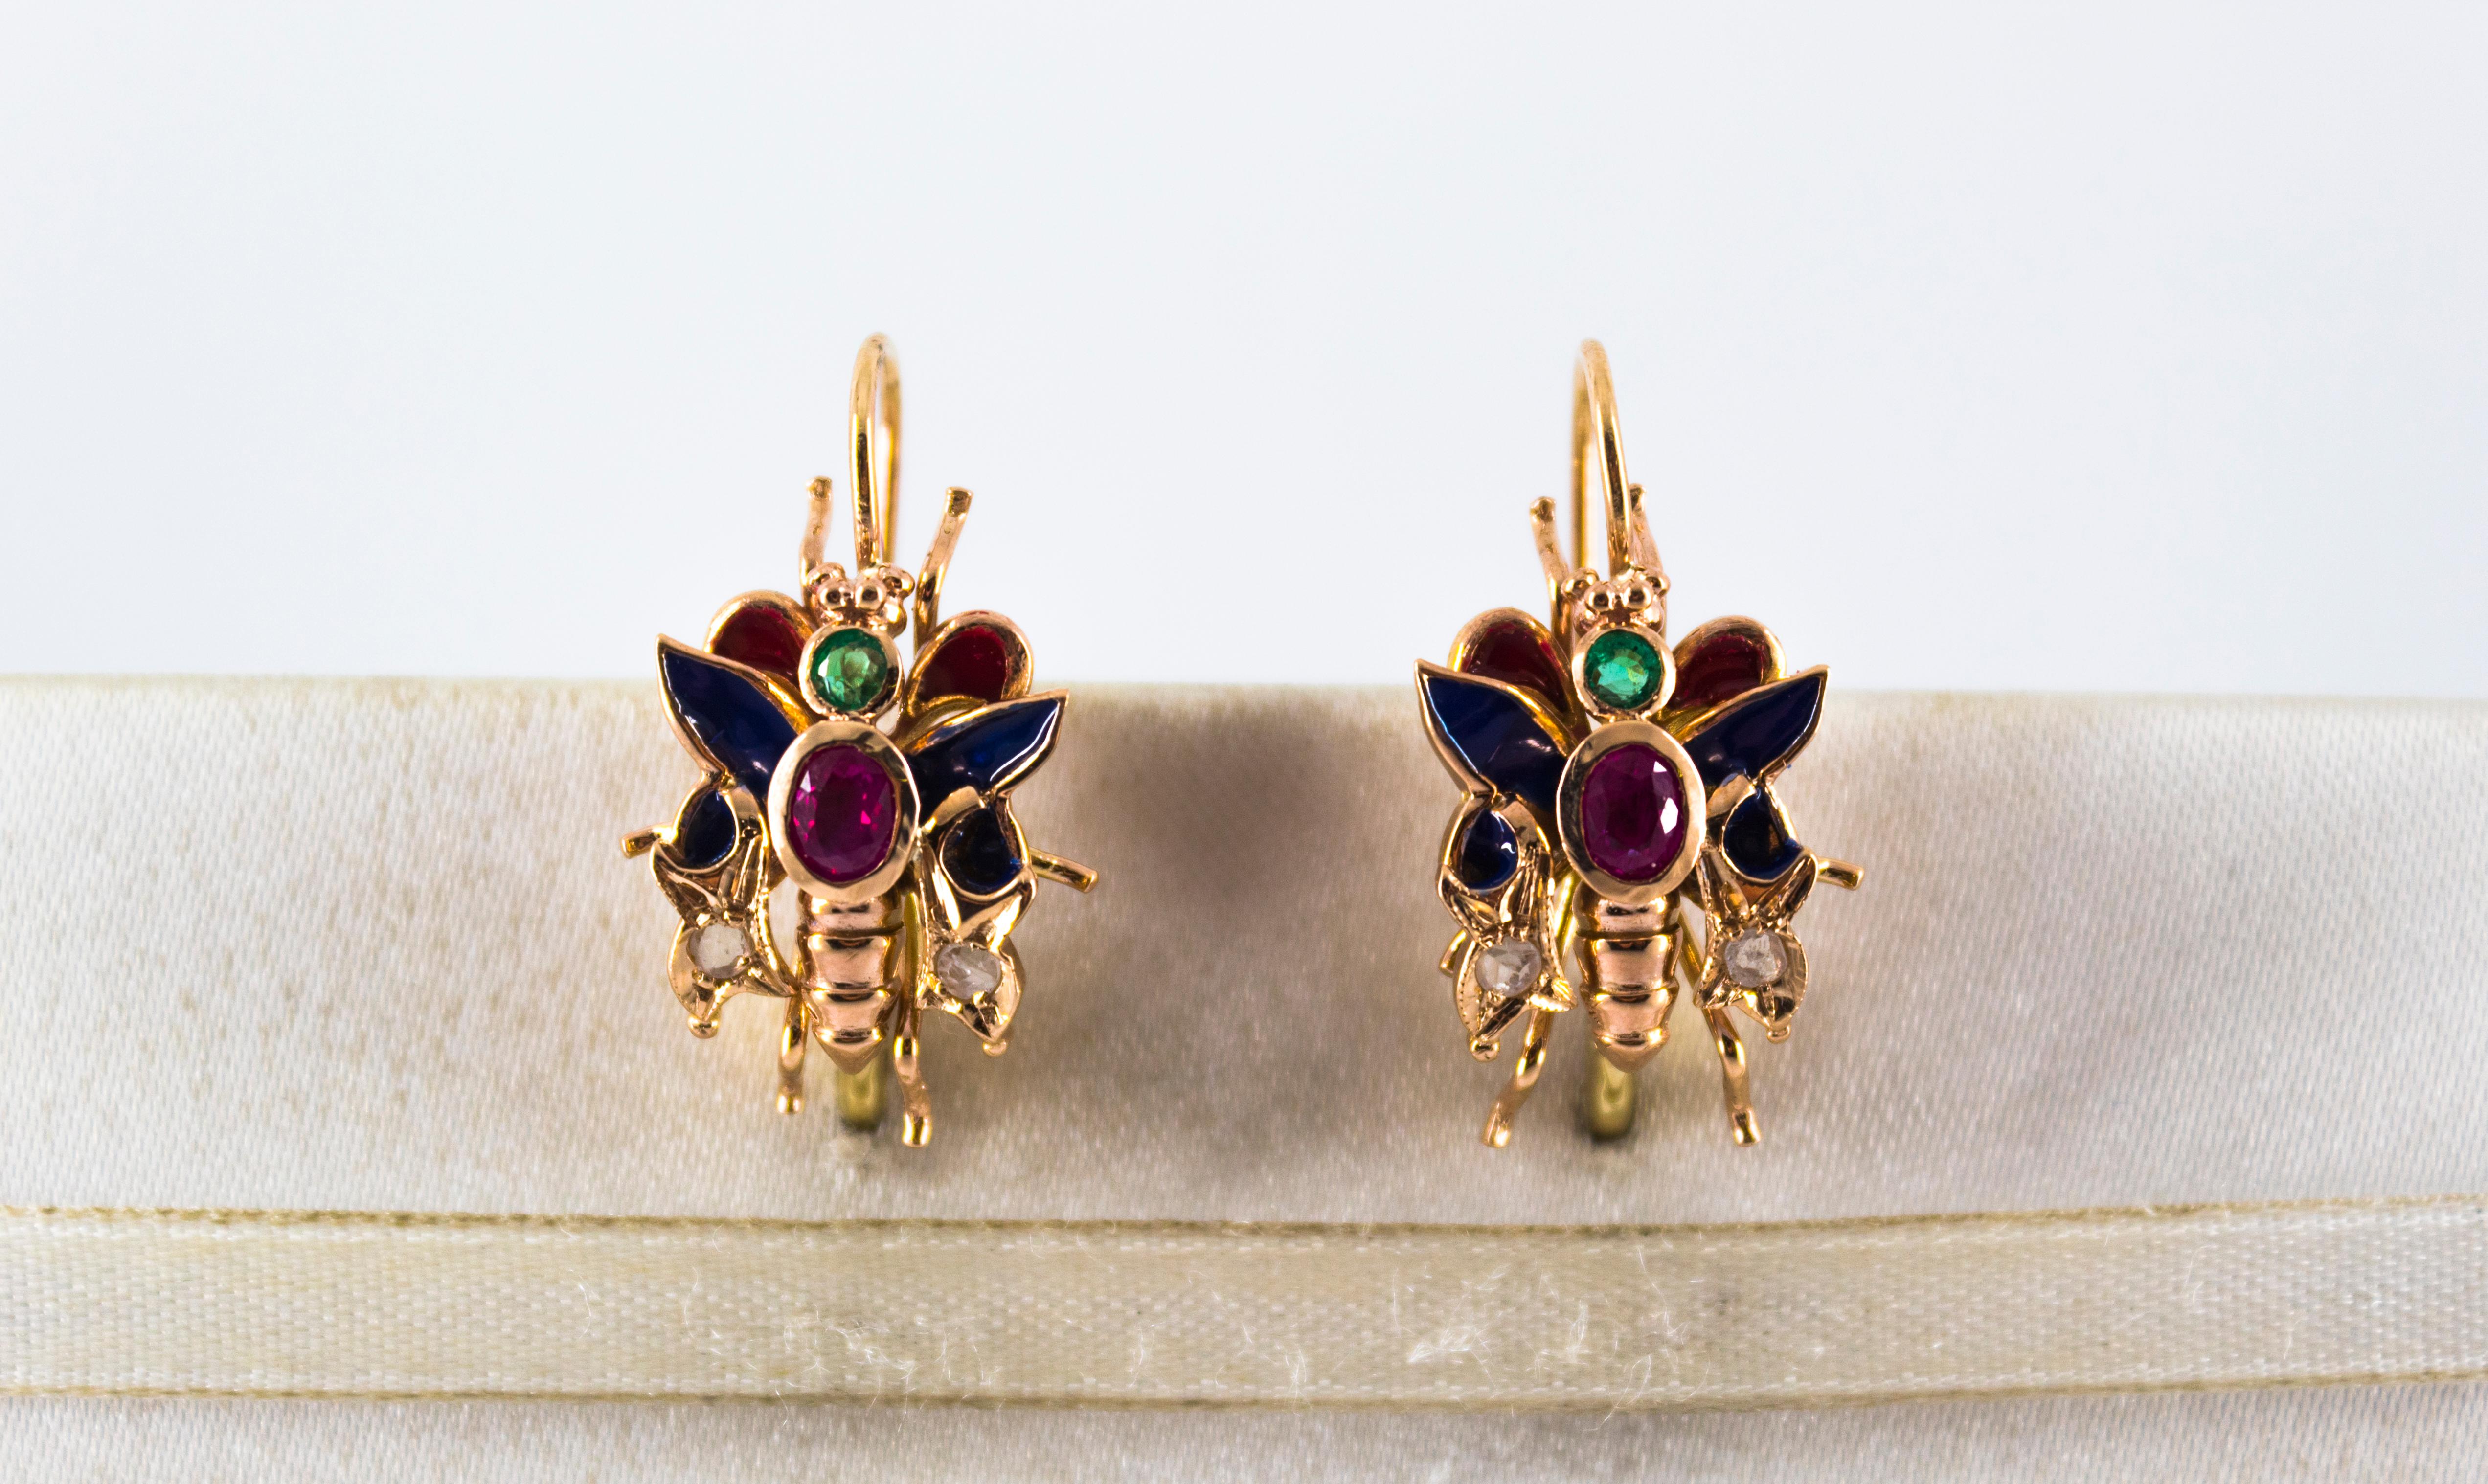 Diese Ohrringe mit Hebelverschluss sind aus 9 Karat Gelbgold gefertigt.
Diese Ohrringe bestehen aus 0,14 Karat weißen Diamanten im Rosenschliff.
Diese Ohrringe haben auch 1,20 Karat Smaragde und Rubine.
Diese Ohrringe sind auch mit Rubin und Smaragd